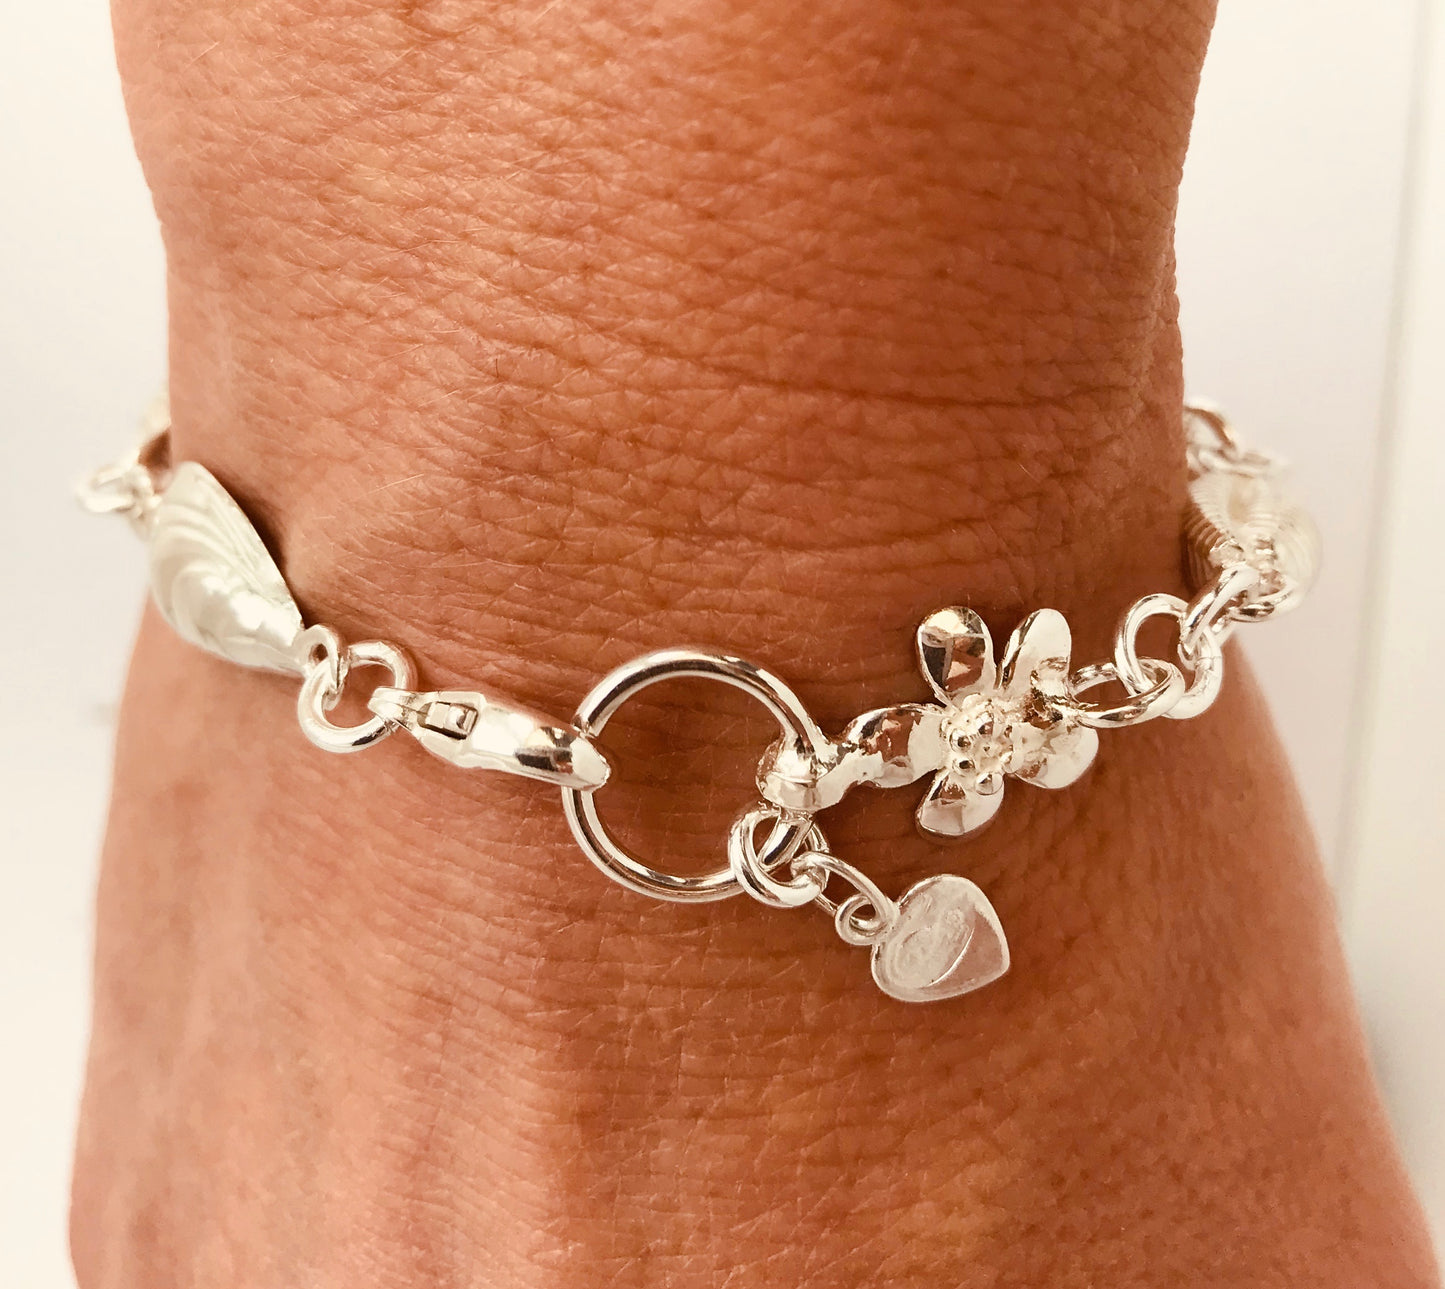  Silver sea shell bracelet